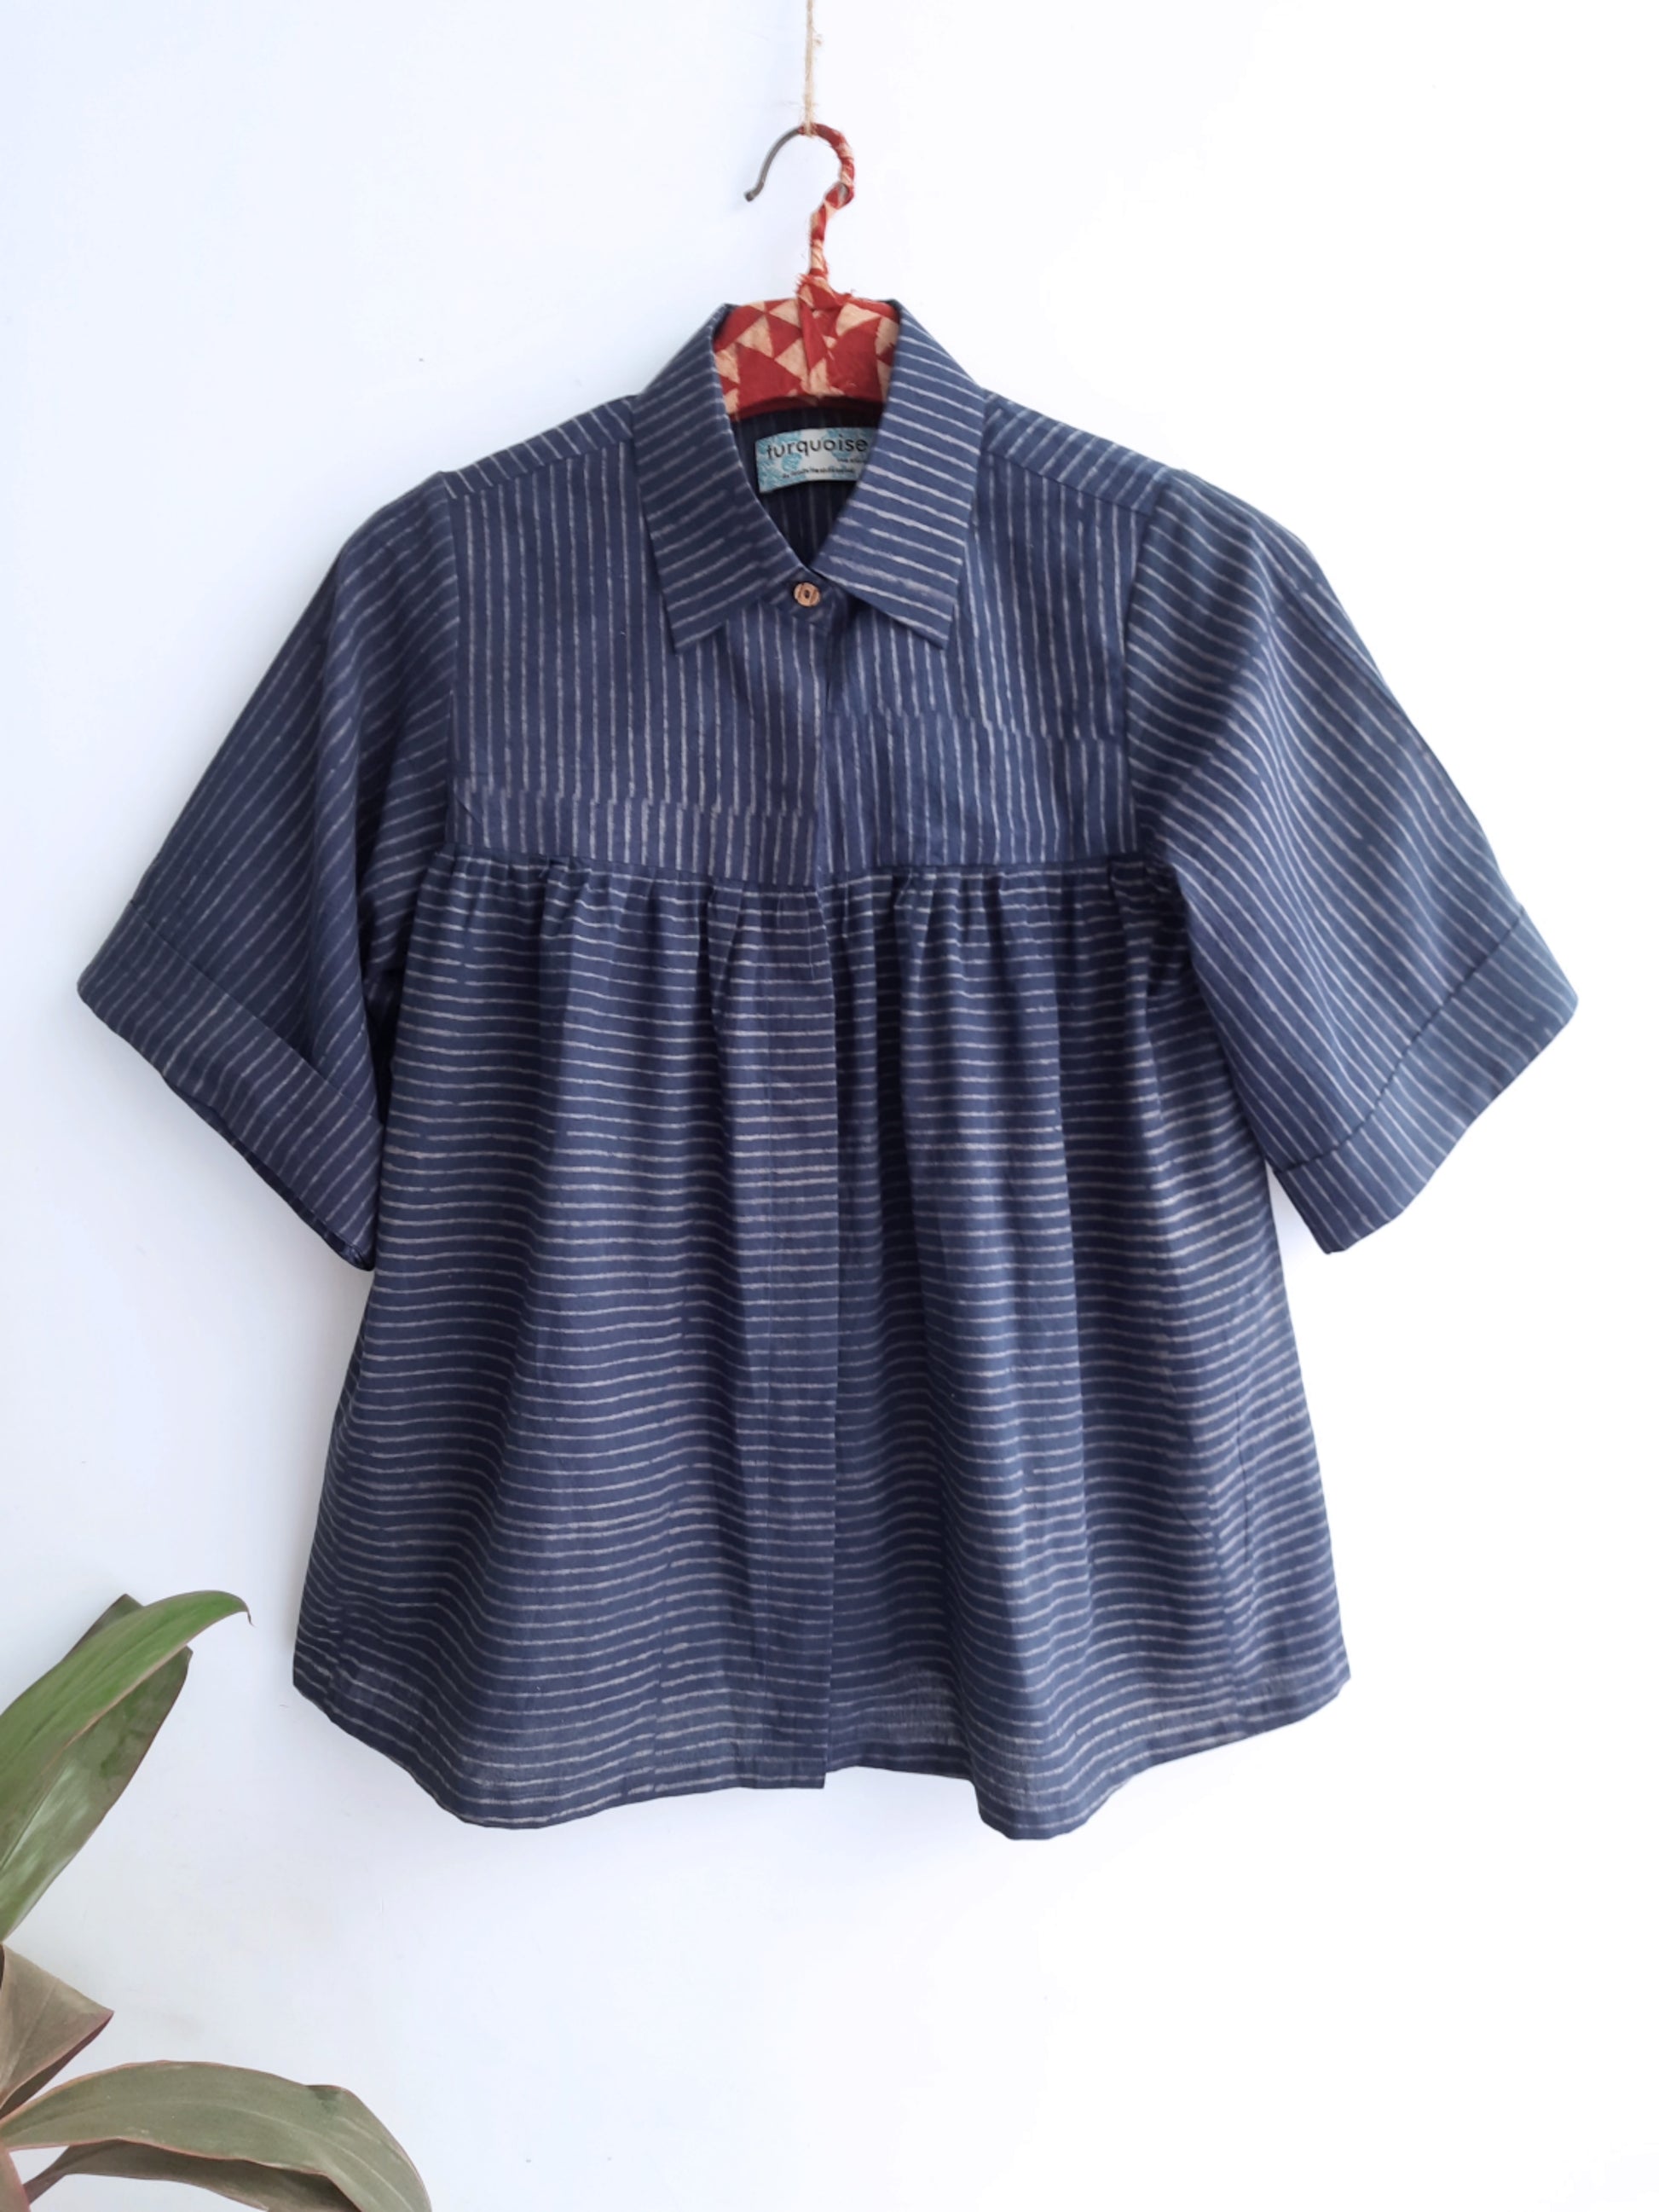 Indigo stripes anti fit shirt, Sustainable fashion